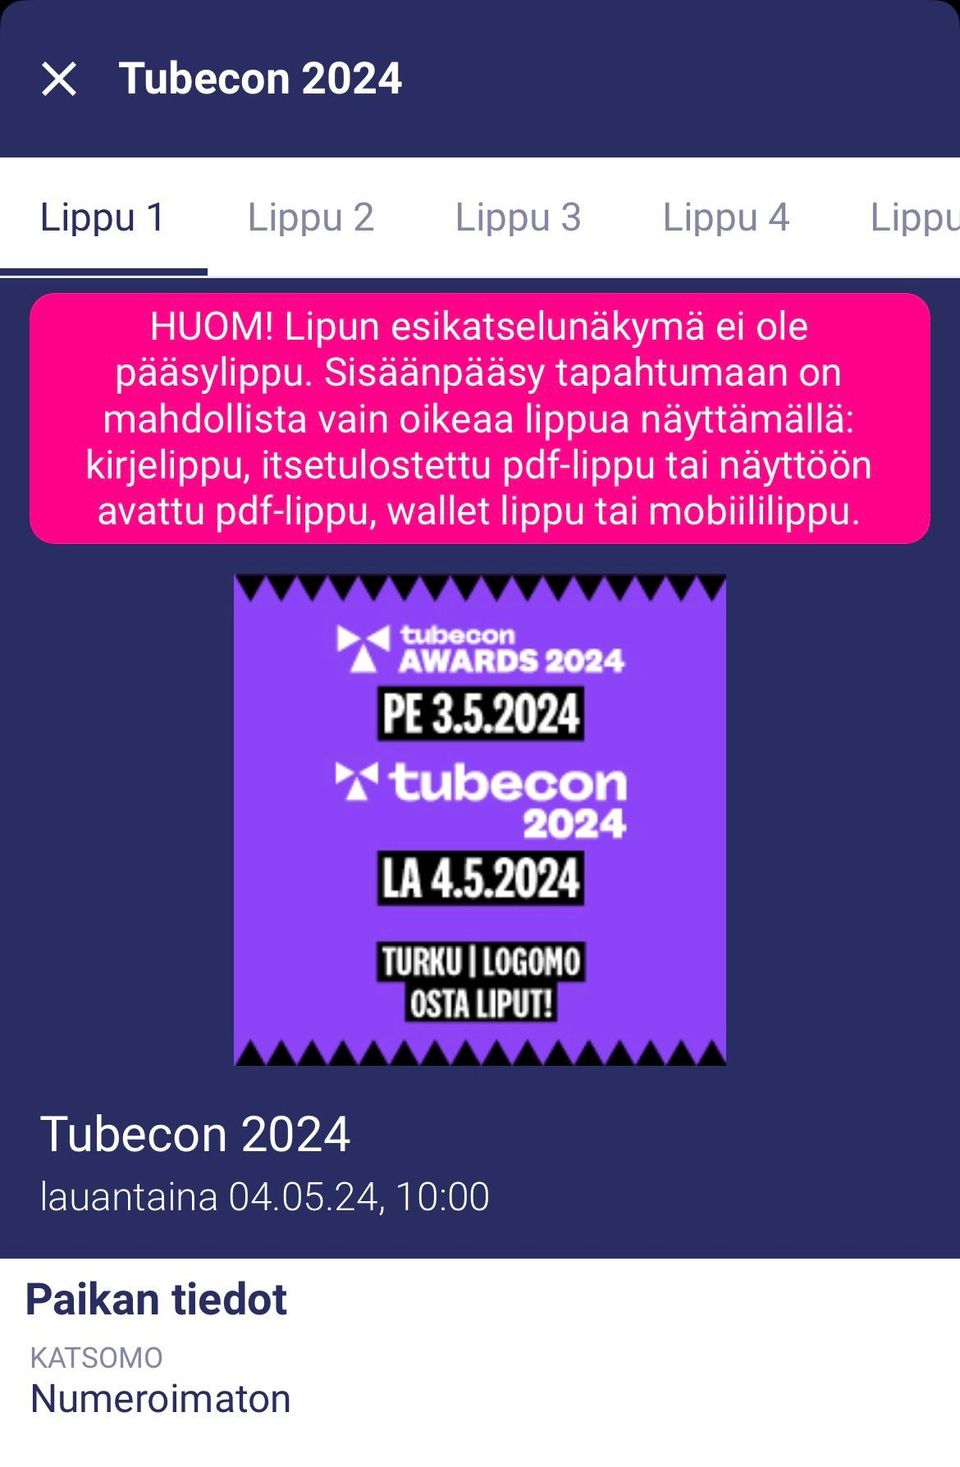 Tubecon 2024 3 lippua